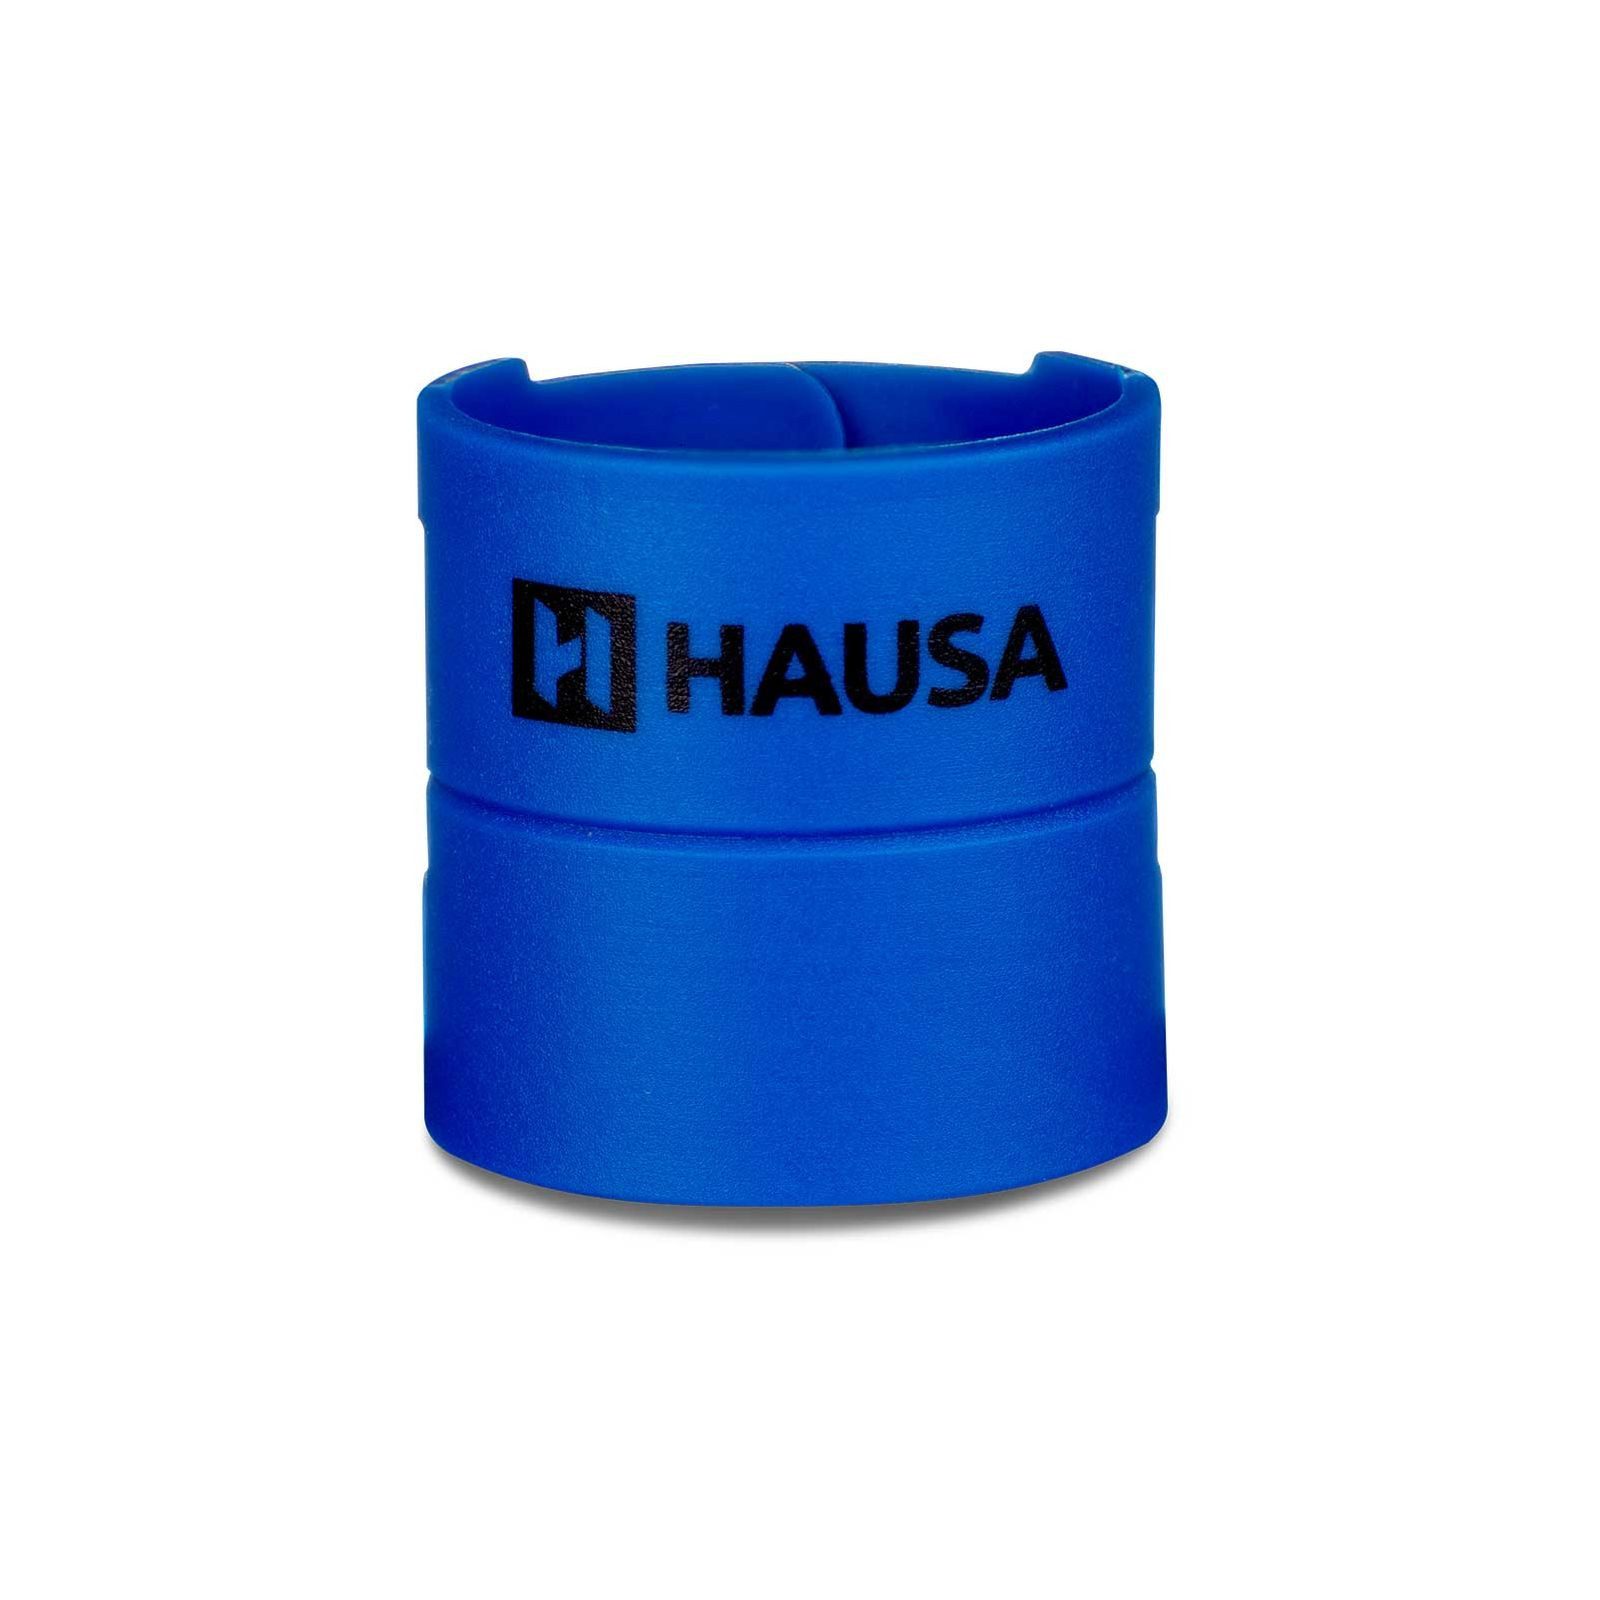 Hausa Installationshilfe Bodenfliese Billy Click, blau, praktische Montagehilfe für den sicheren Einbau von Dichtmanschetten, einfache Anwendung, effiziente Ergebnisse, robust und langlebig